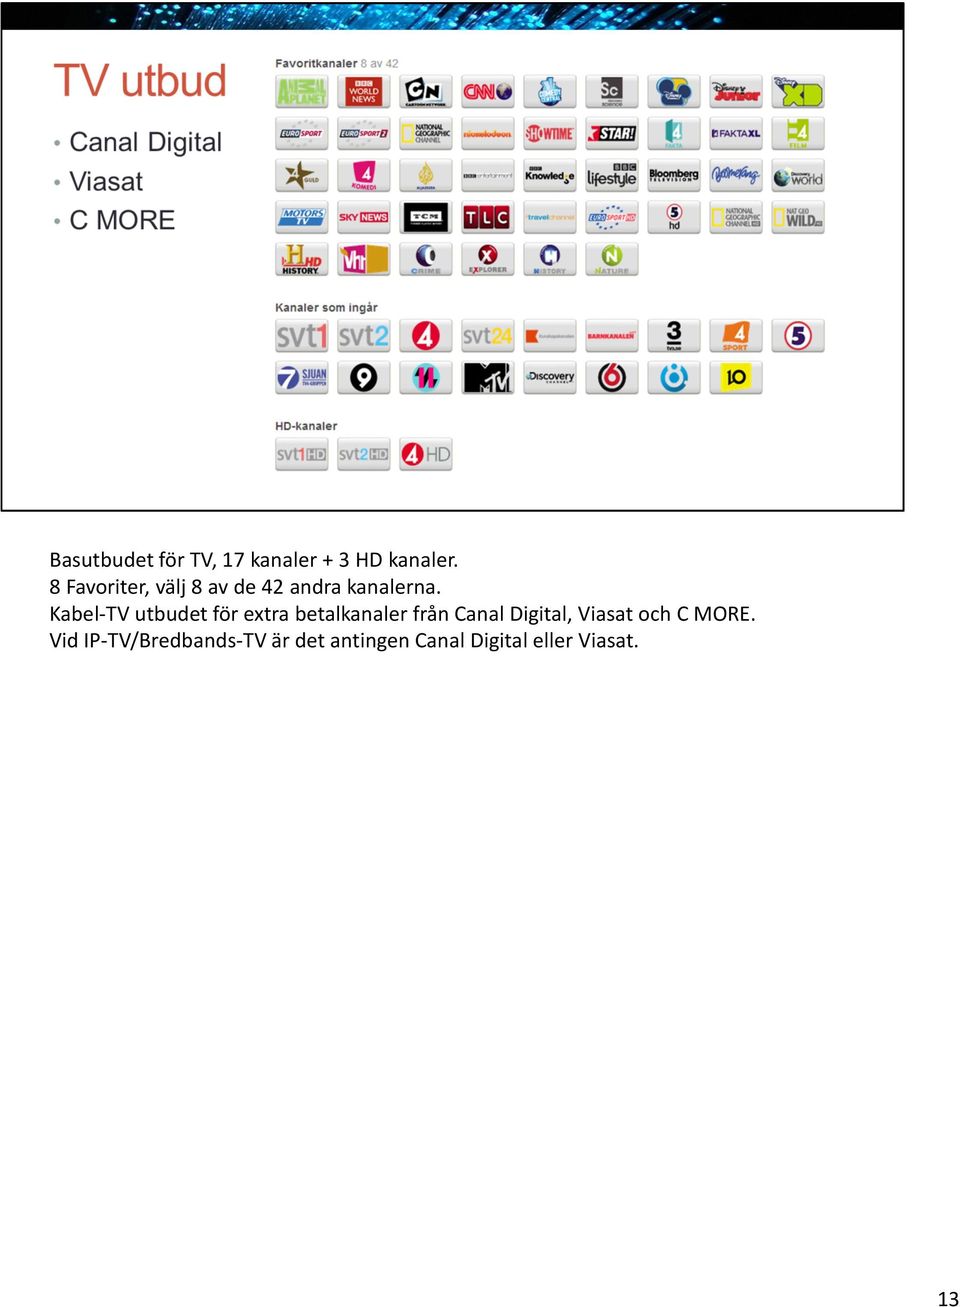 Kabel-TV utbudet för extra betalkanaler från Canal Digital,